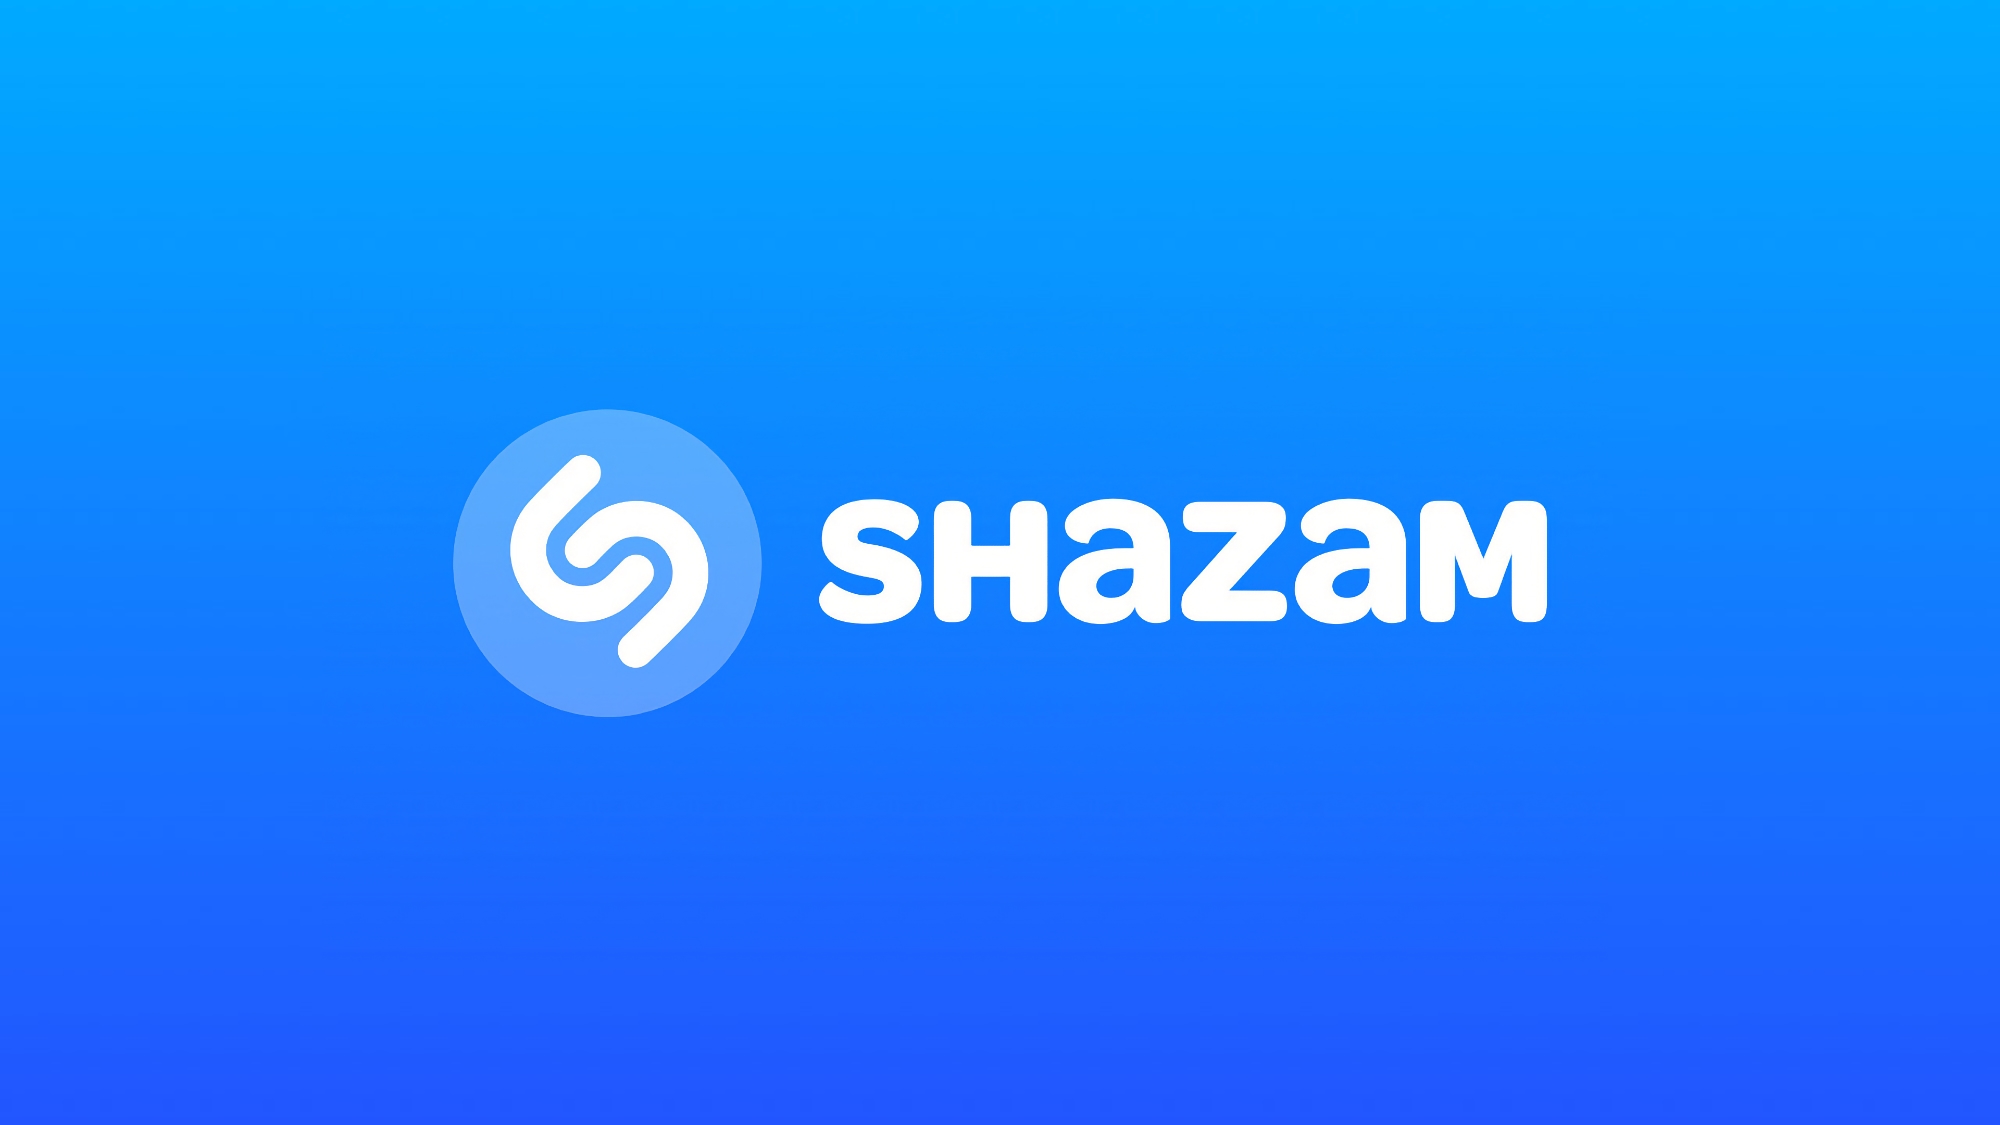 Shazam uczy się rozpoznawać muzykę w TikTok, Instagram, YouTube i innych aplikacjach